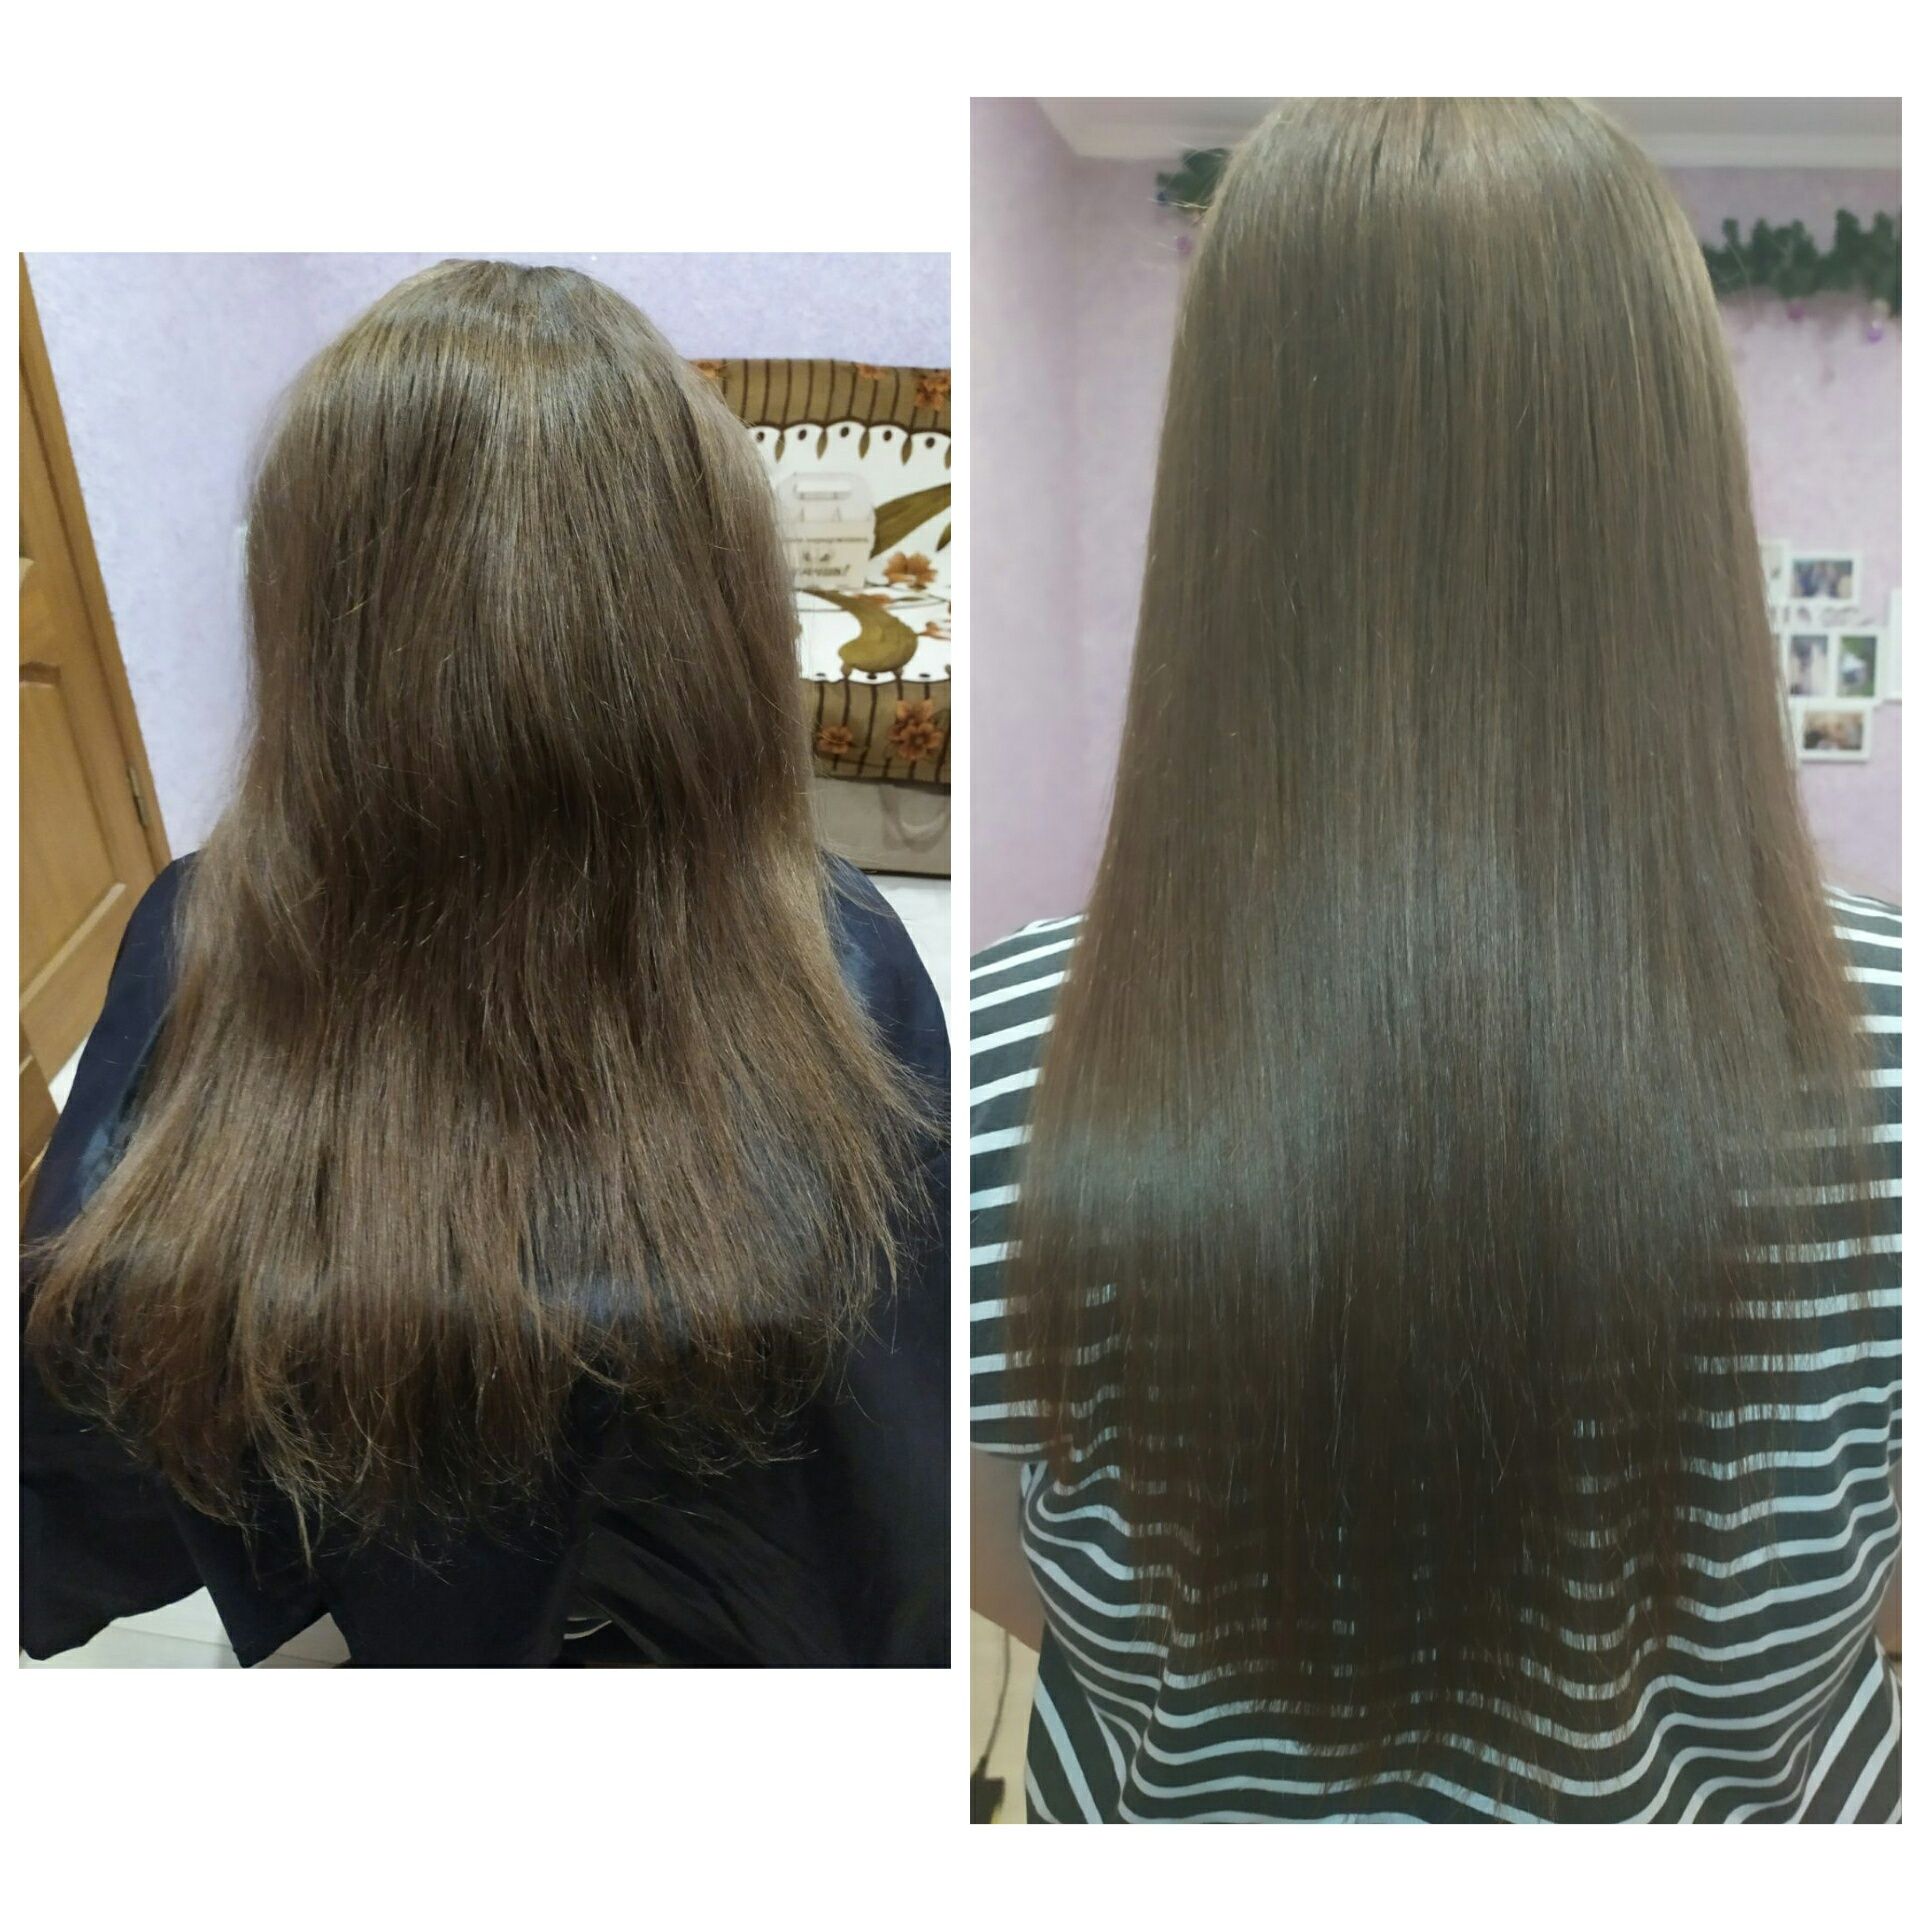 Полировка волос (с минимальной потерей длины) цена 200-250грн